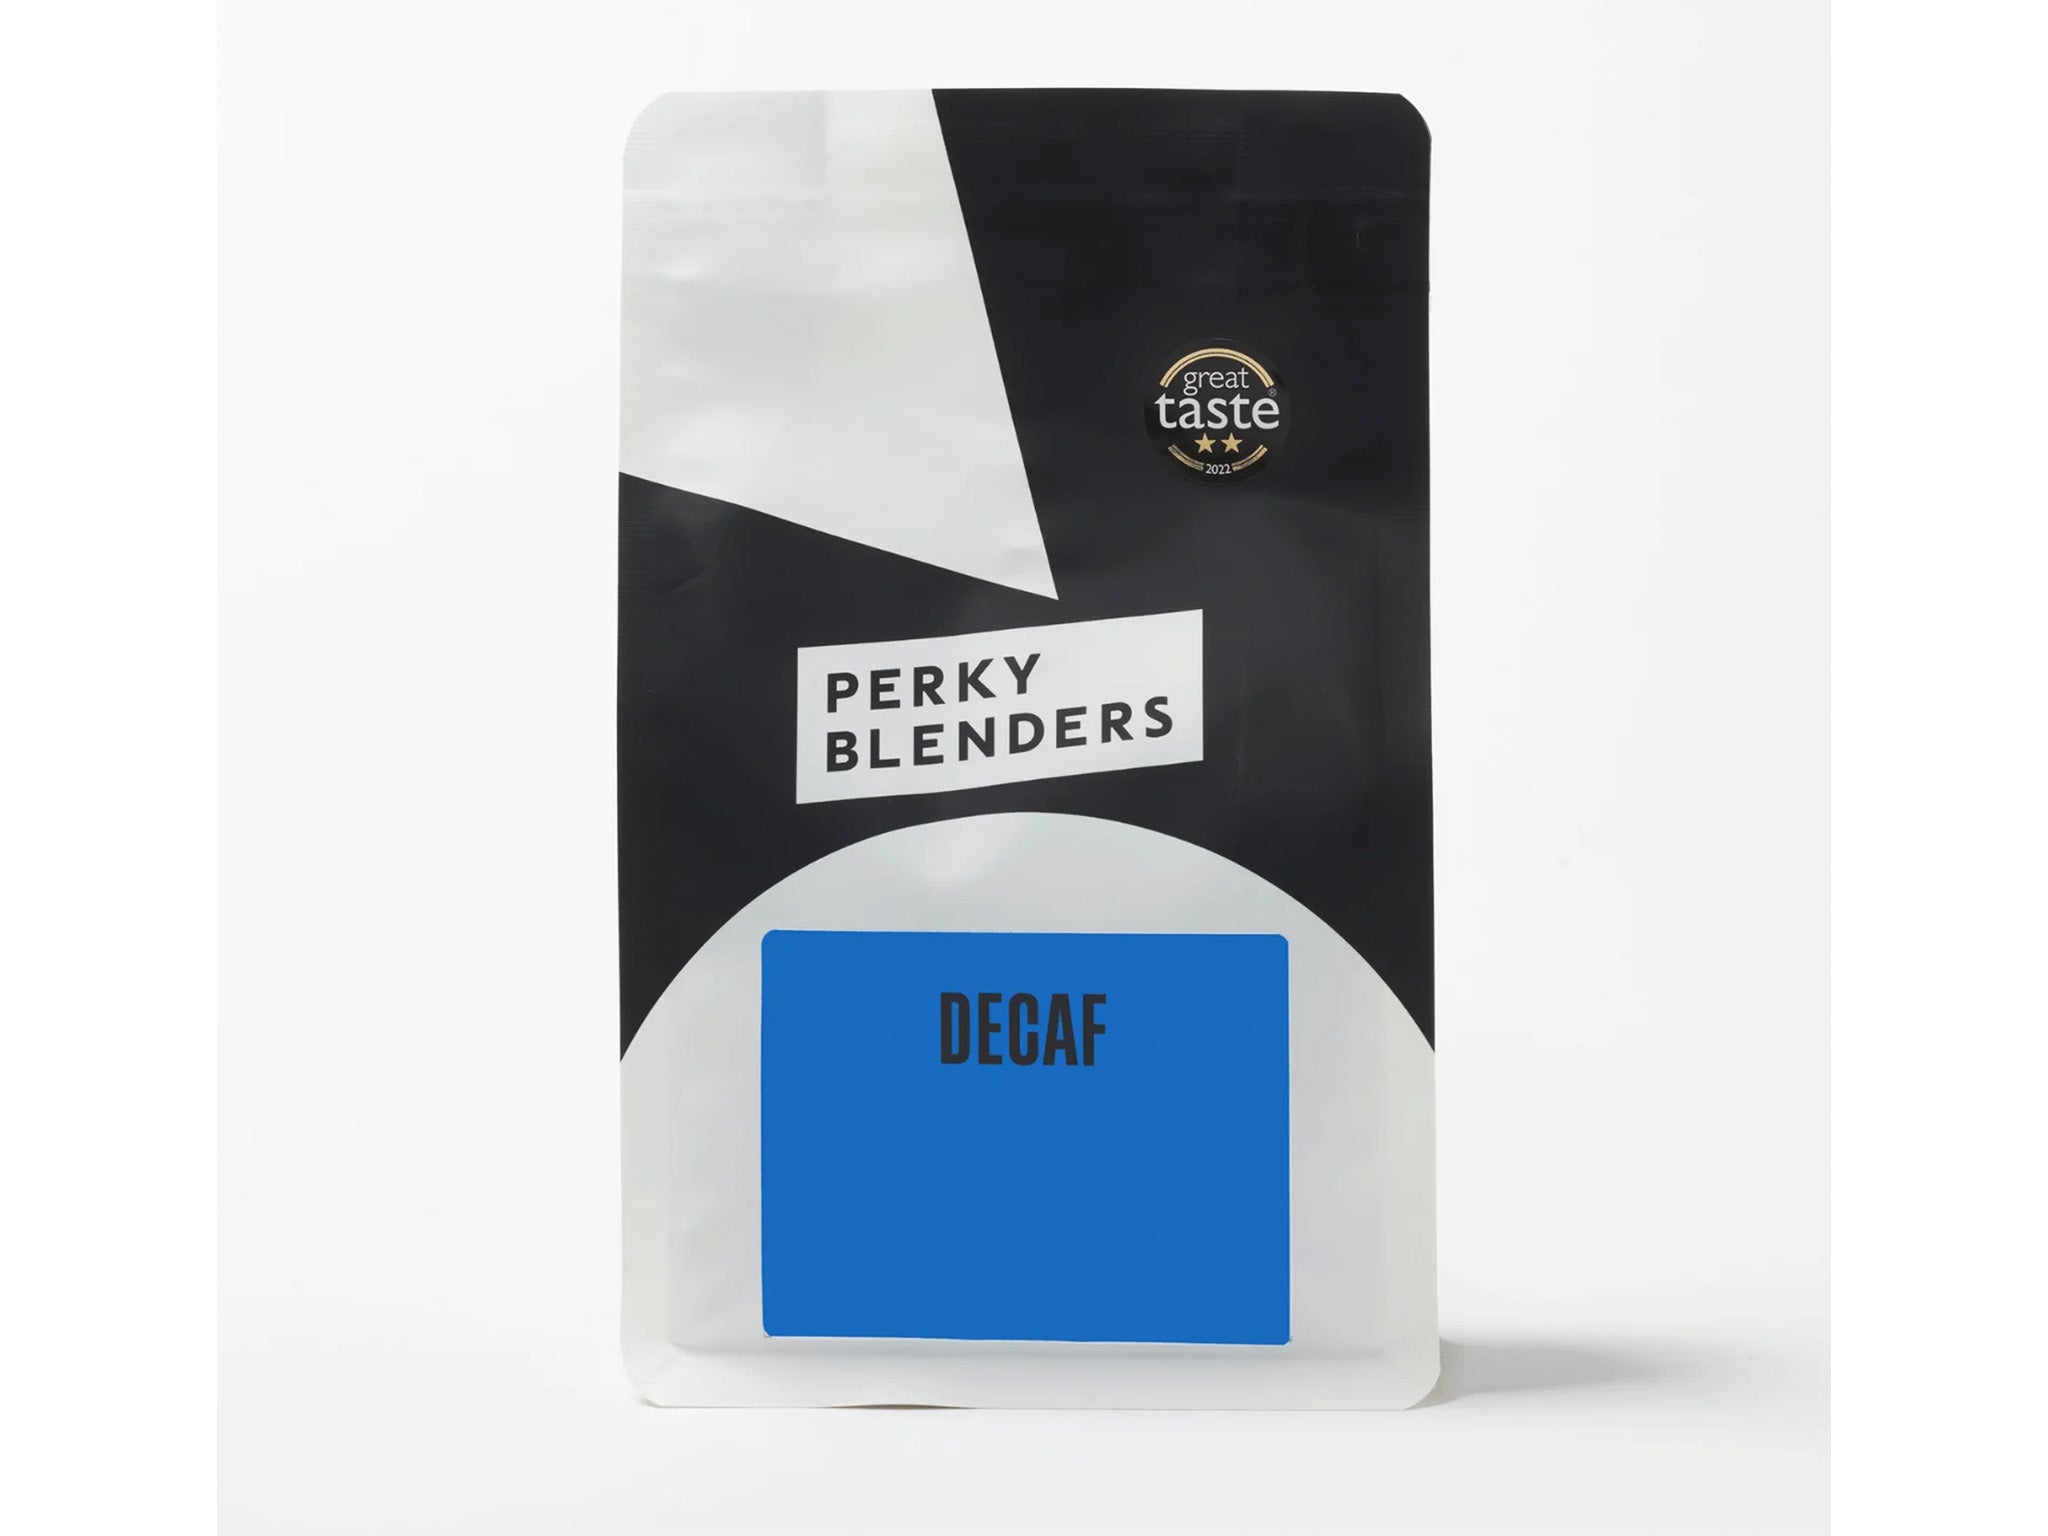 Perky Blenders decaf